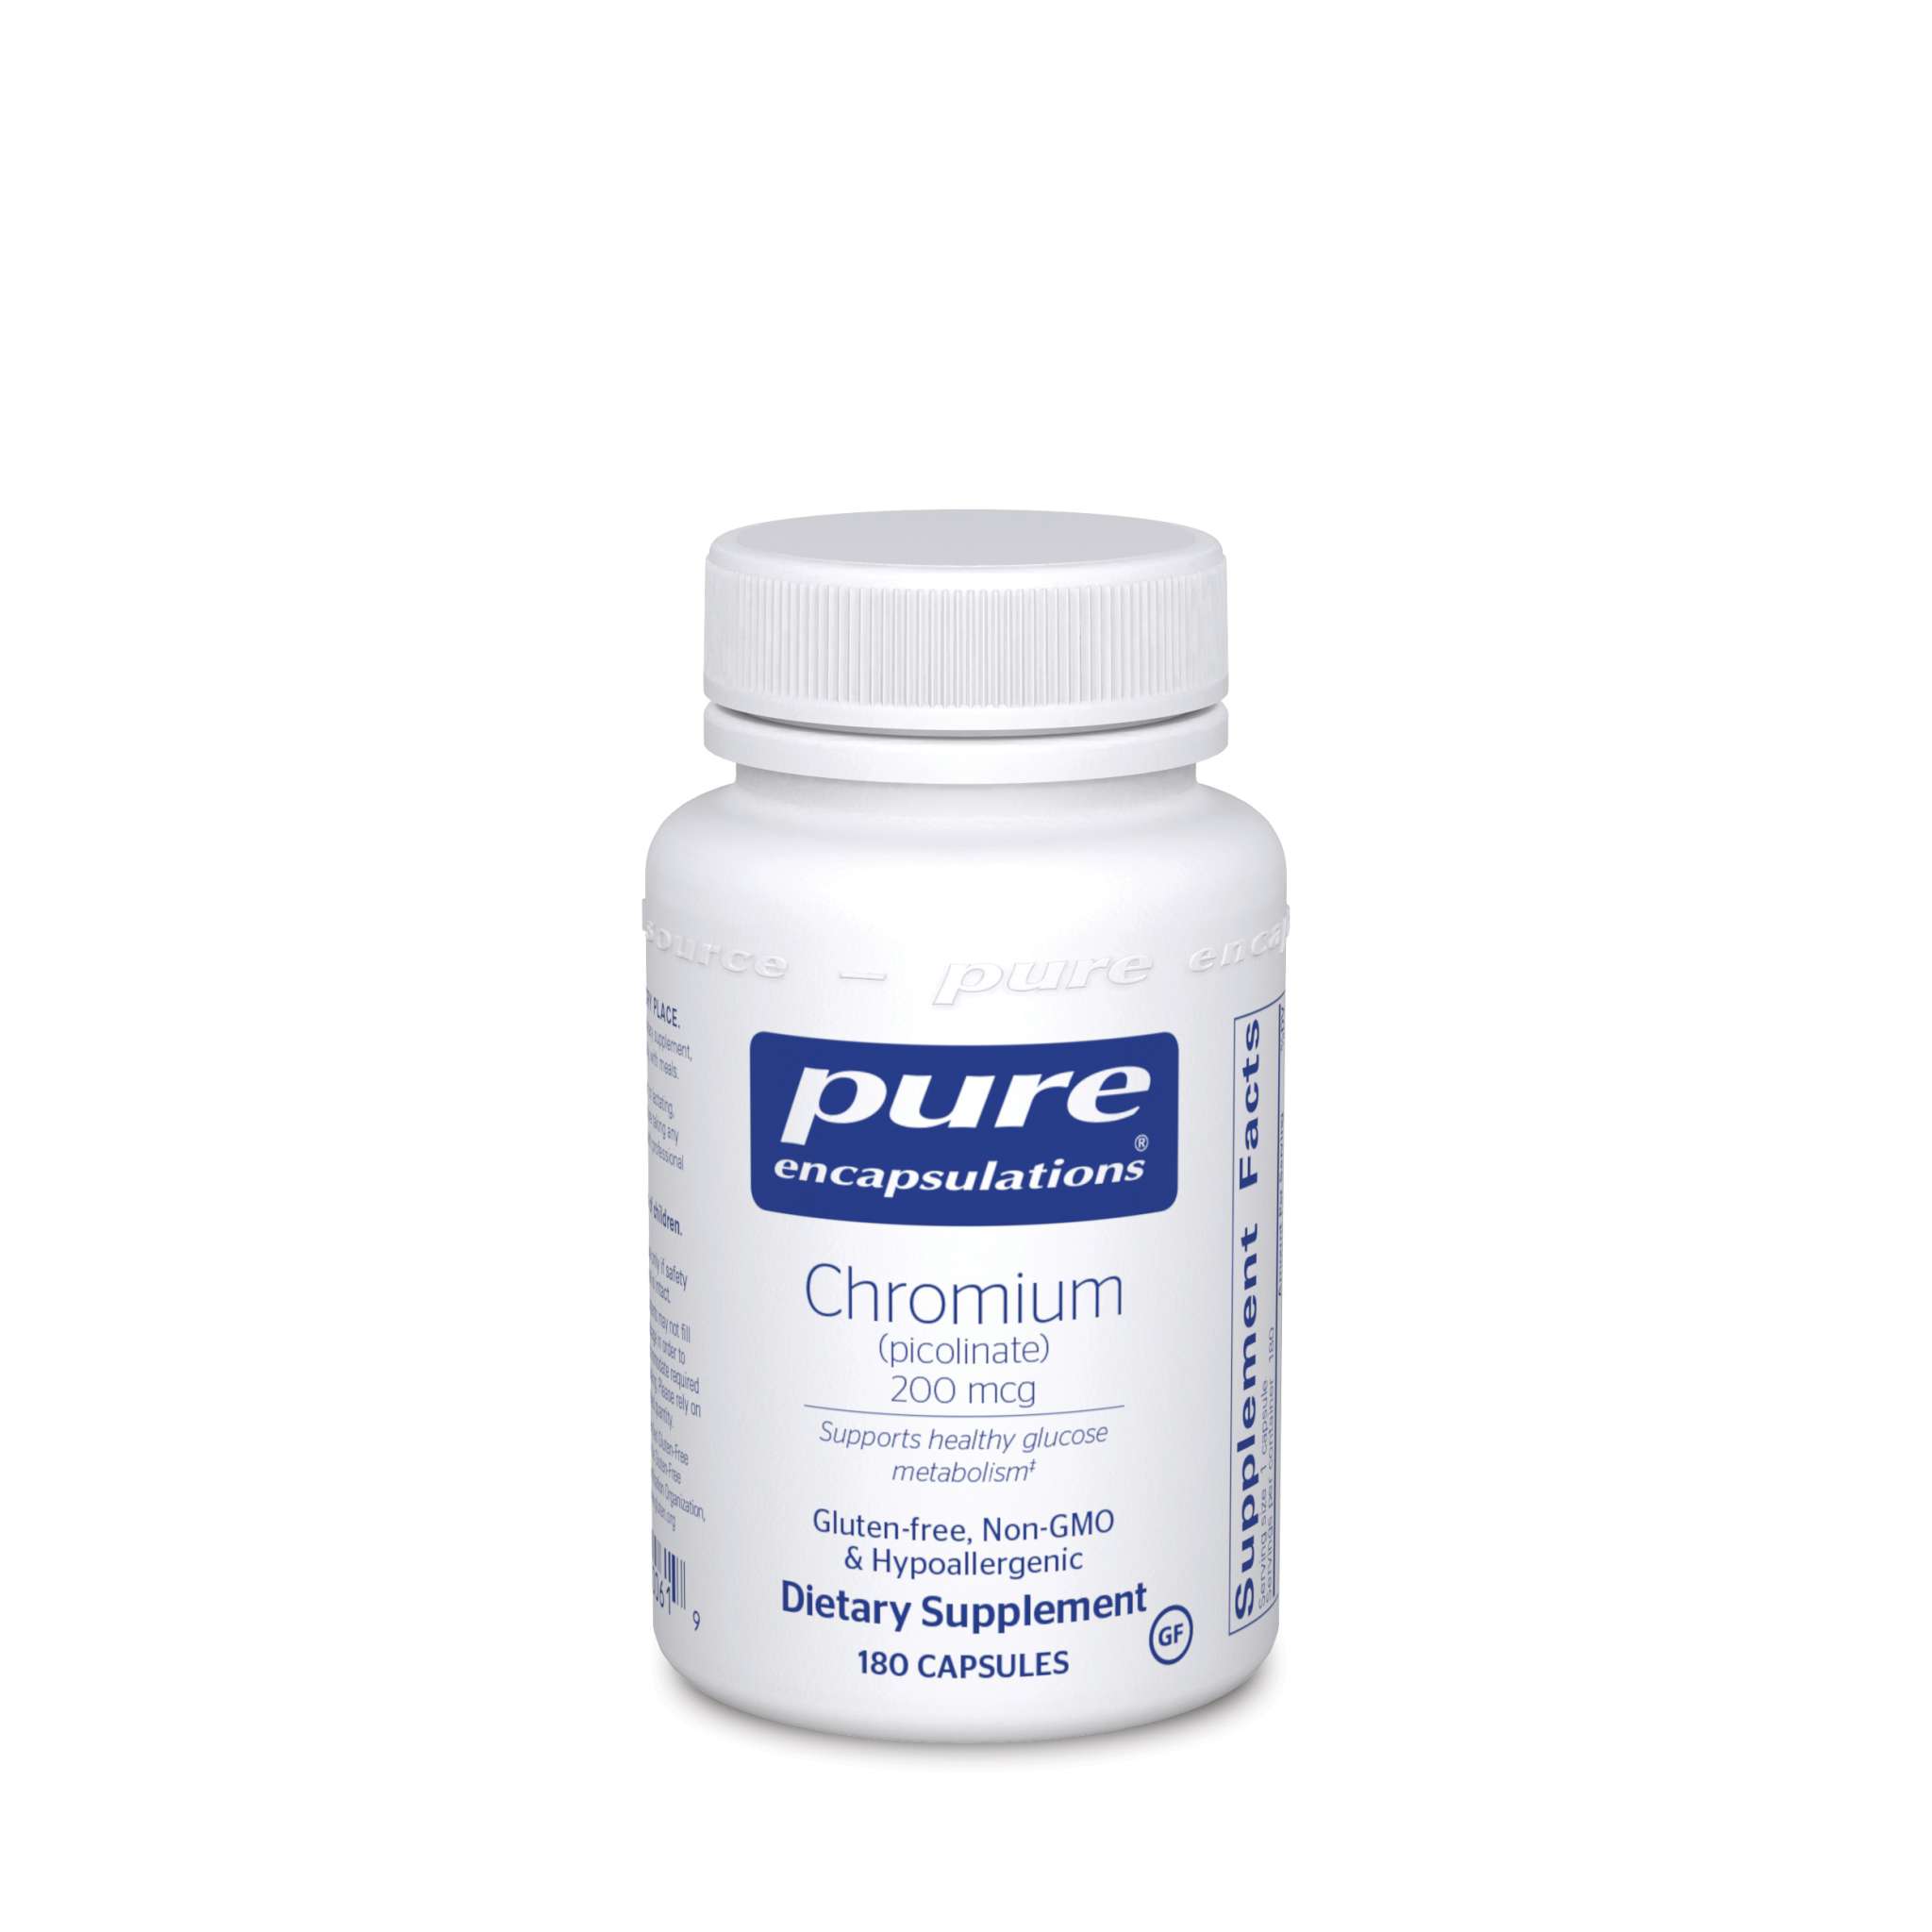 Pure Encapsulations - Chromium Picolinate 200 mcg